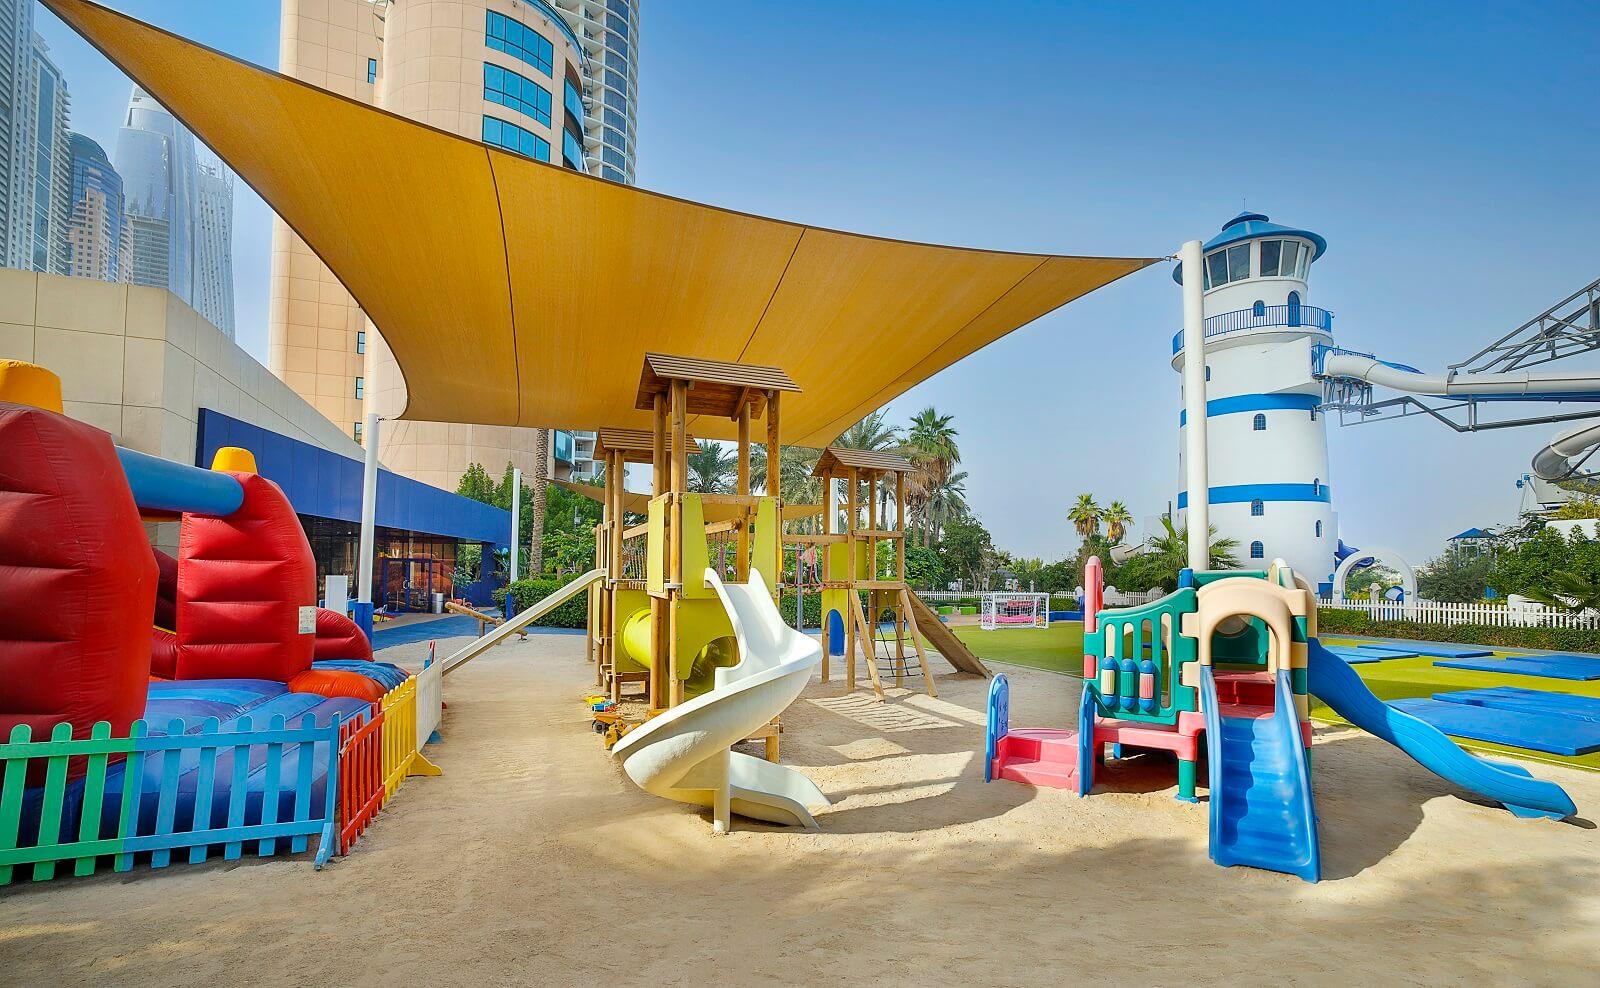 Le Meridien Mina Seyahi Beach Resort and Waterpark Kids Club